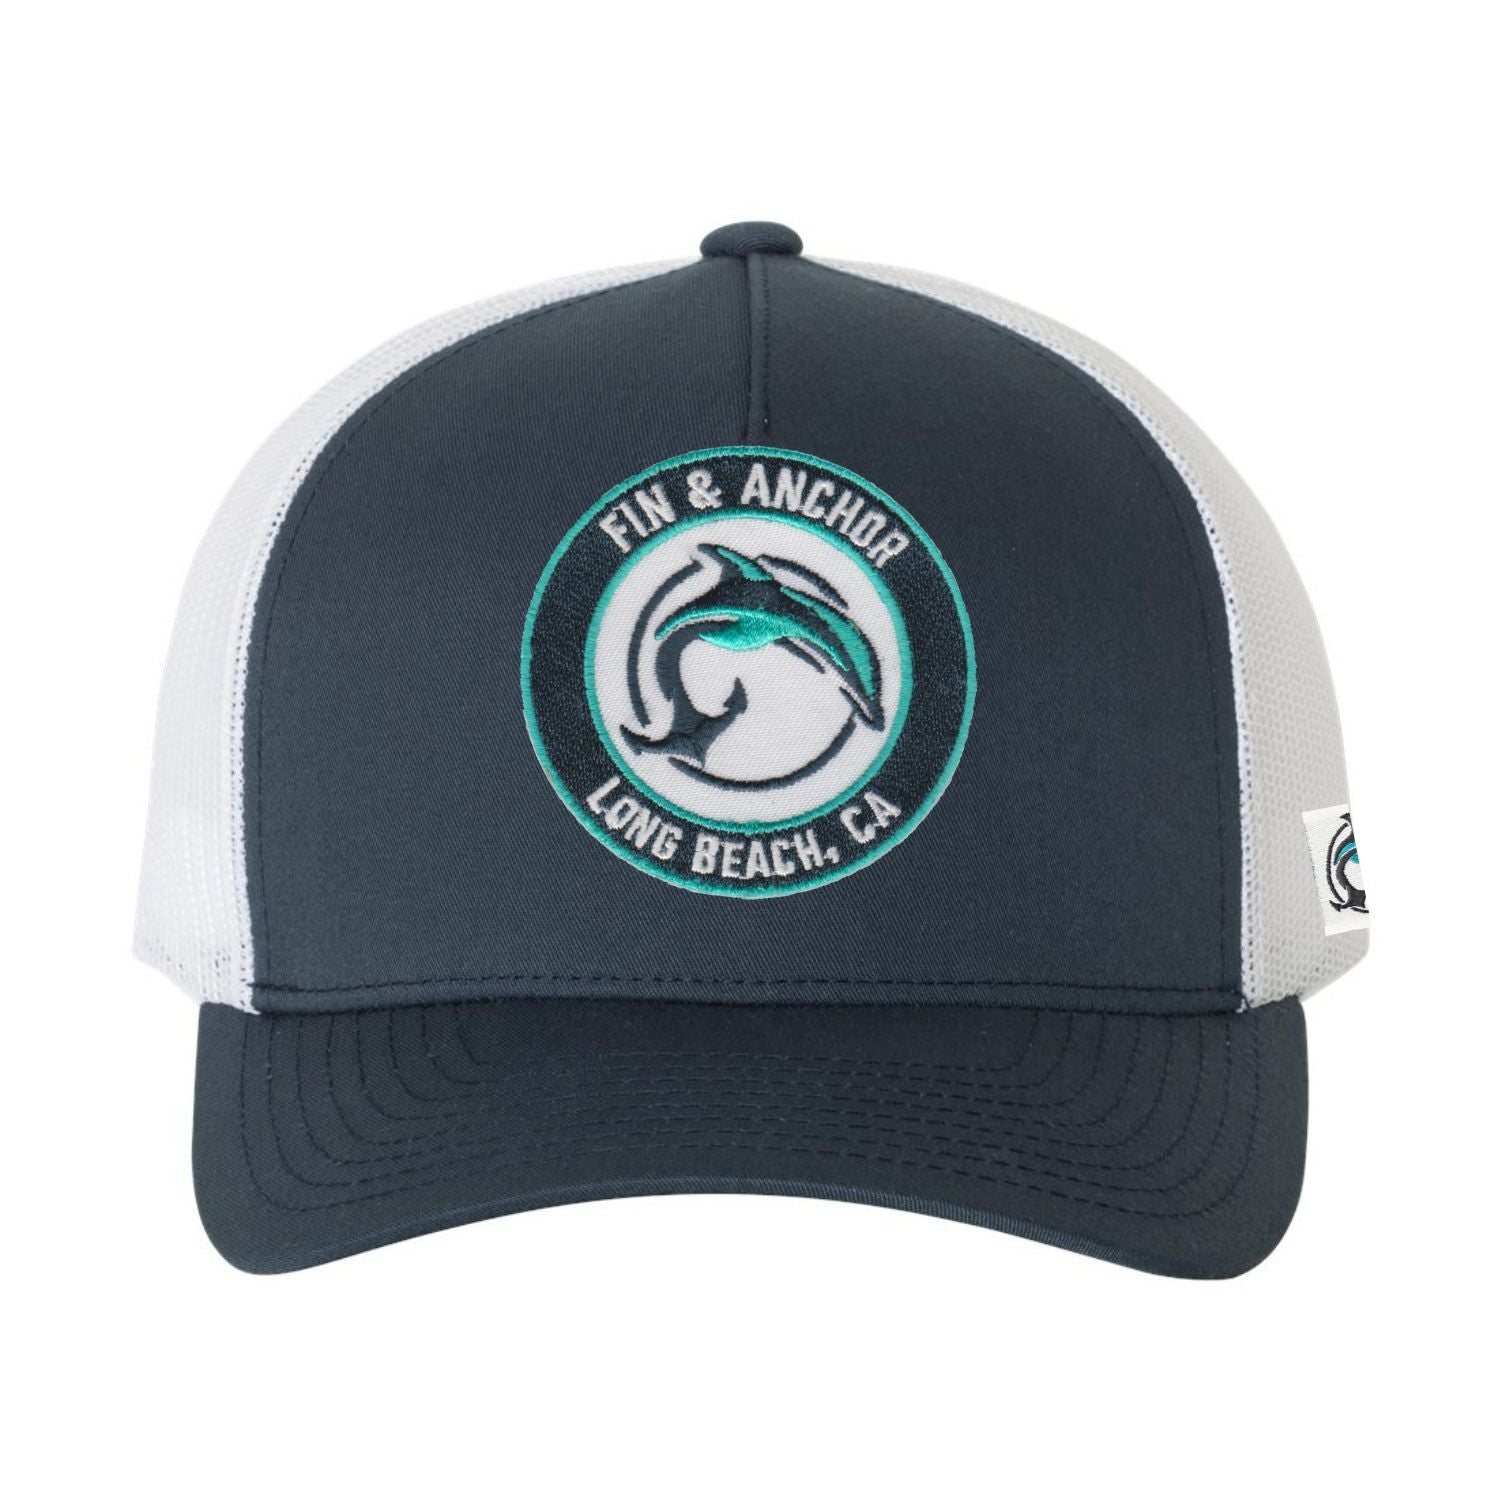 Fin & Anchor Long Beach Patch Retro Trucker Hat